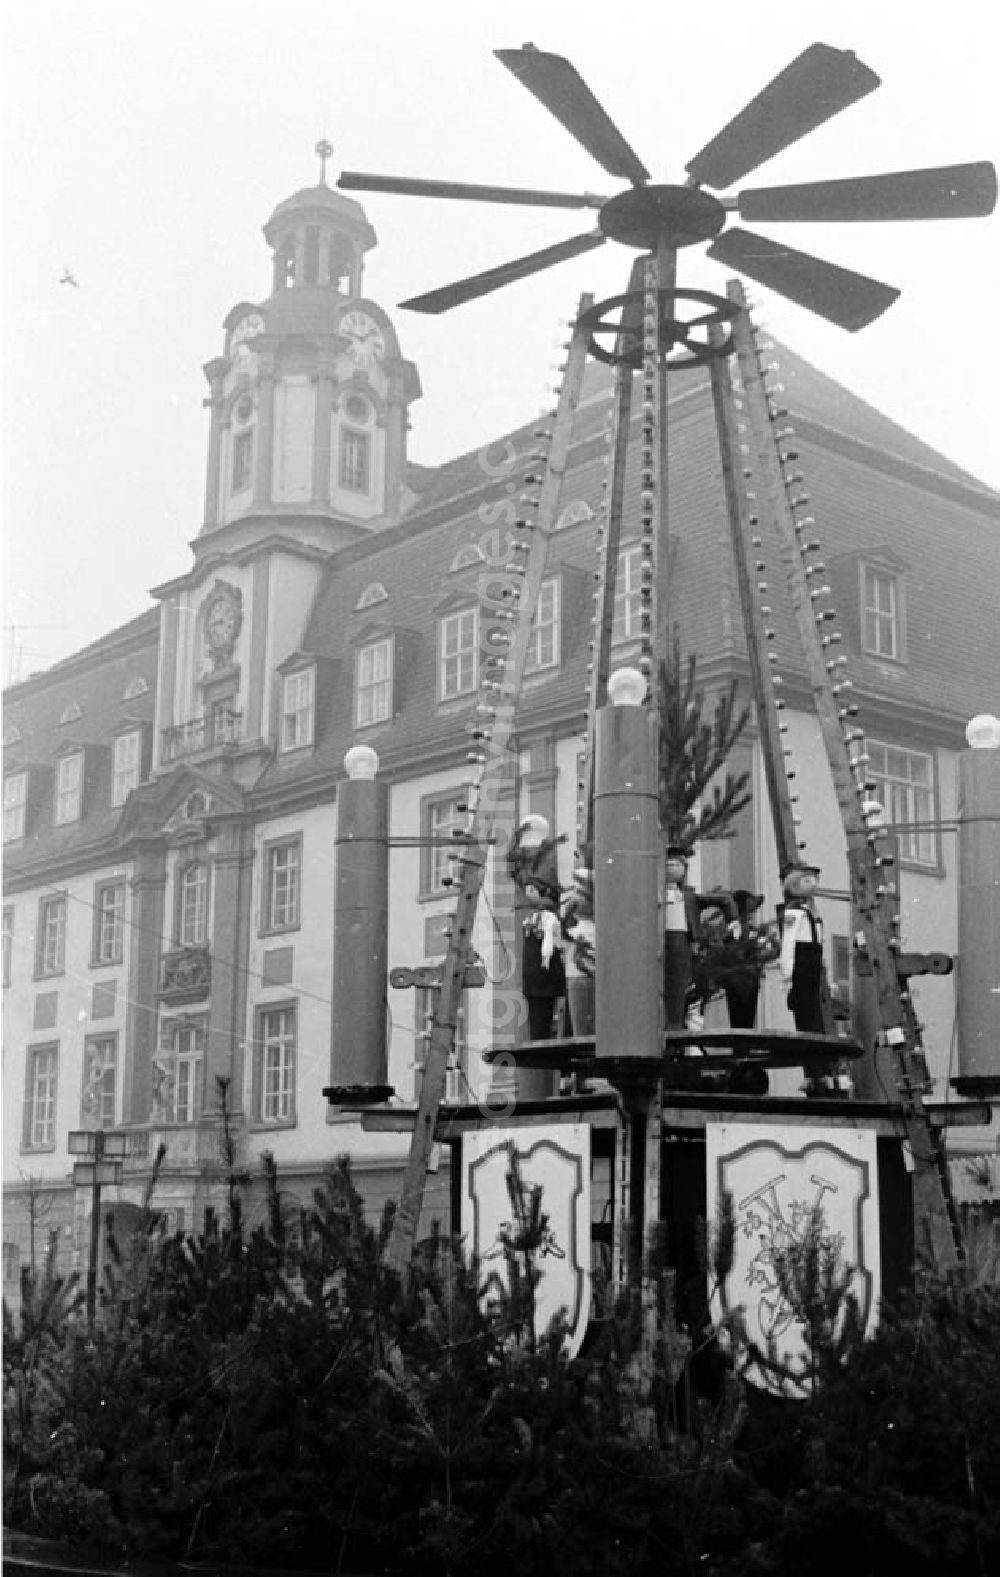 GDR photo archive: Weißenfels - 11.12.1986 Rundgang durch die Stadt Weißenfels mit einigen Markten und Sehenswürdigkeiten.